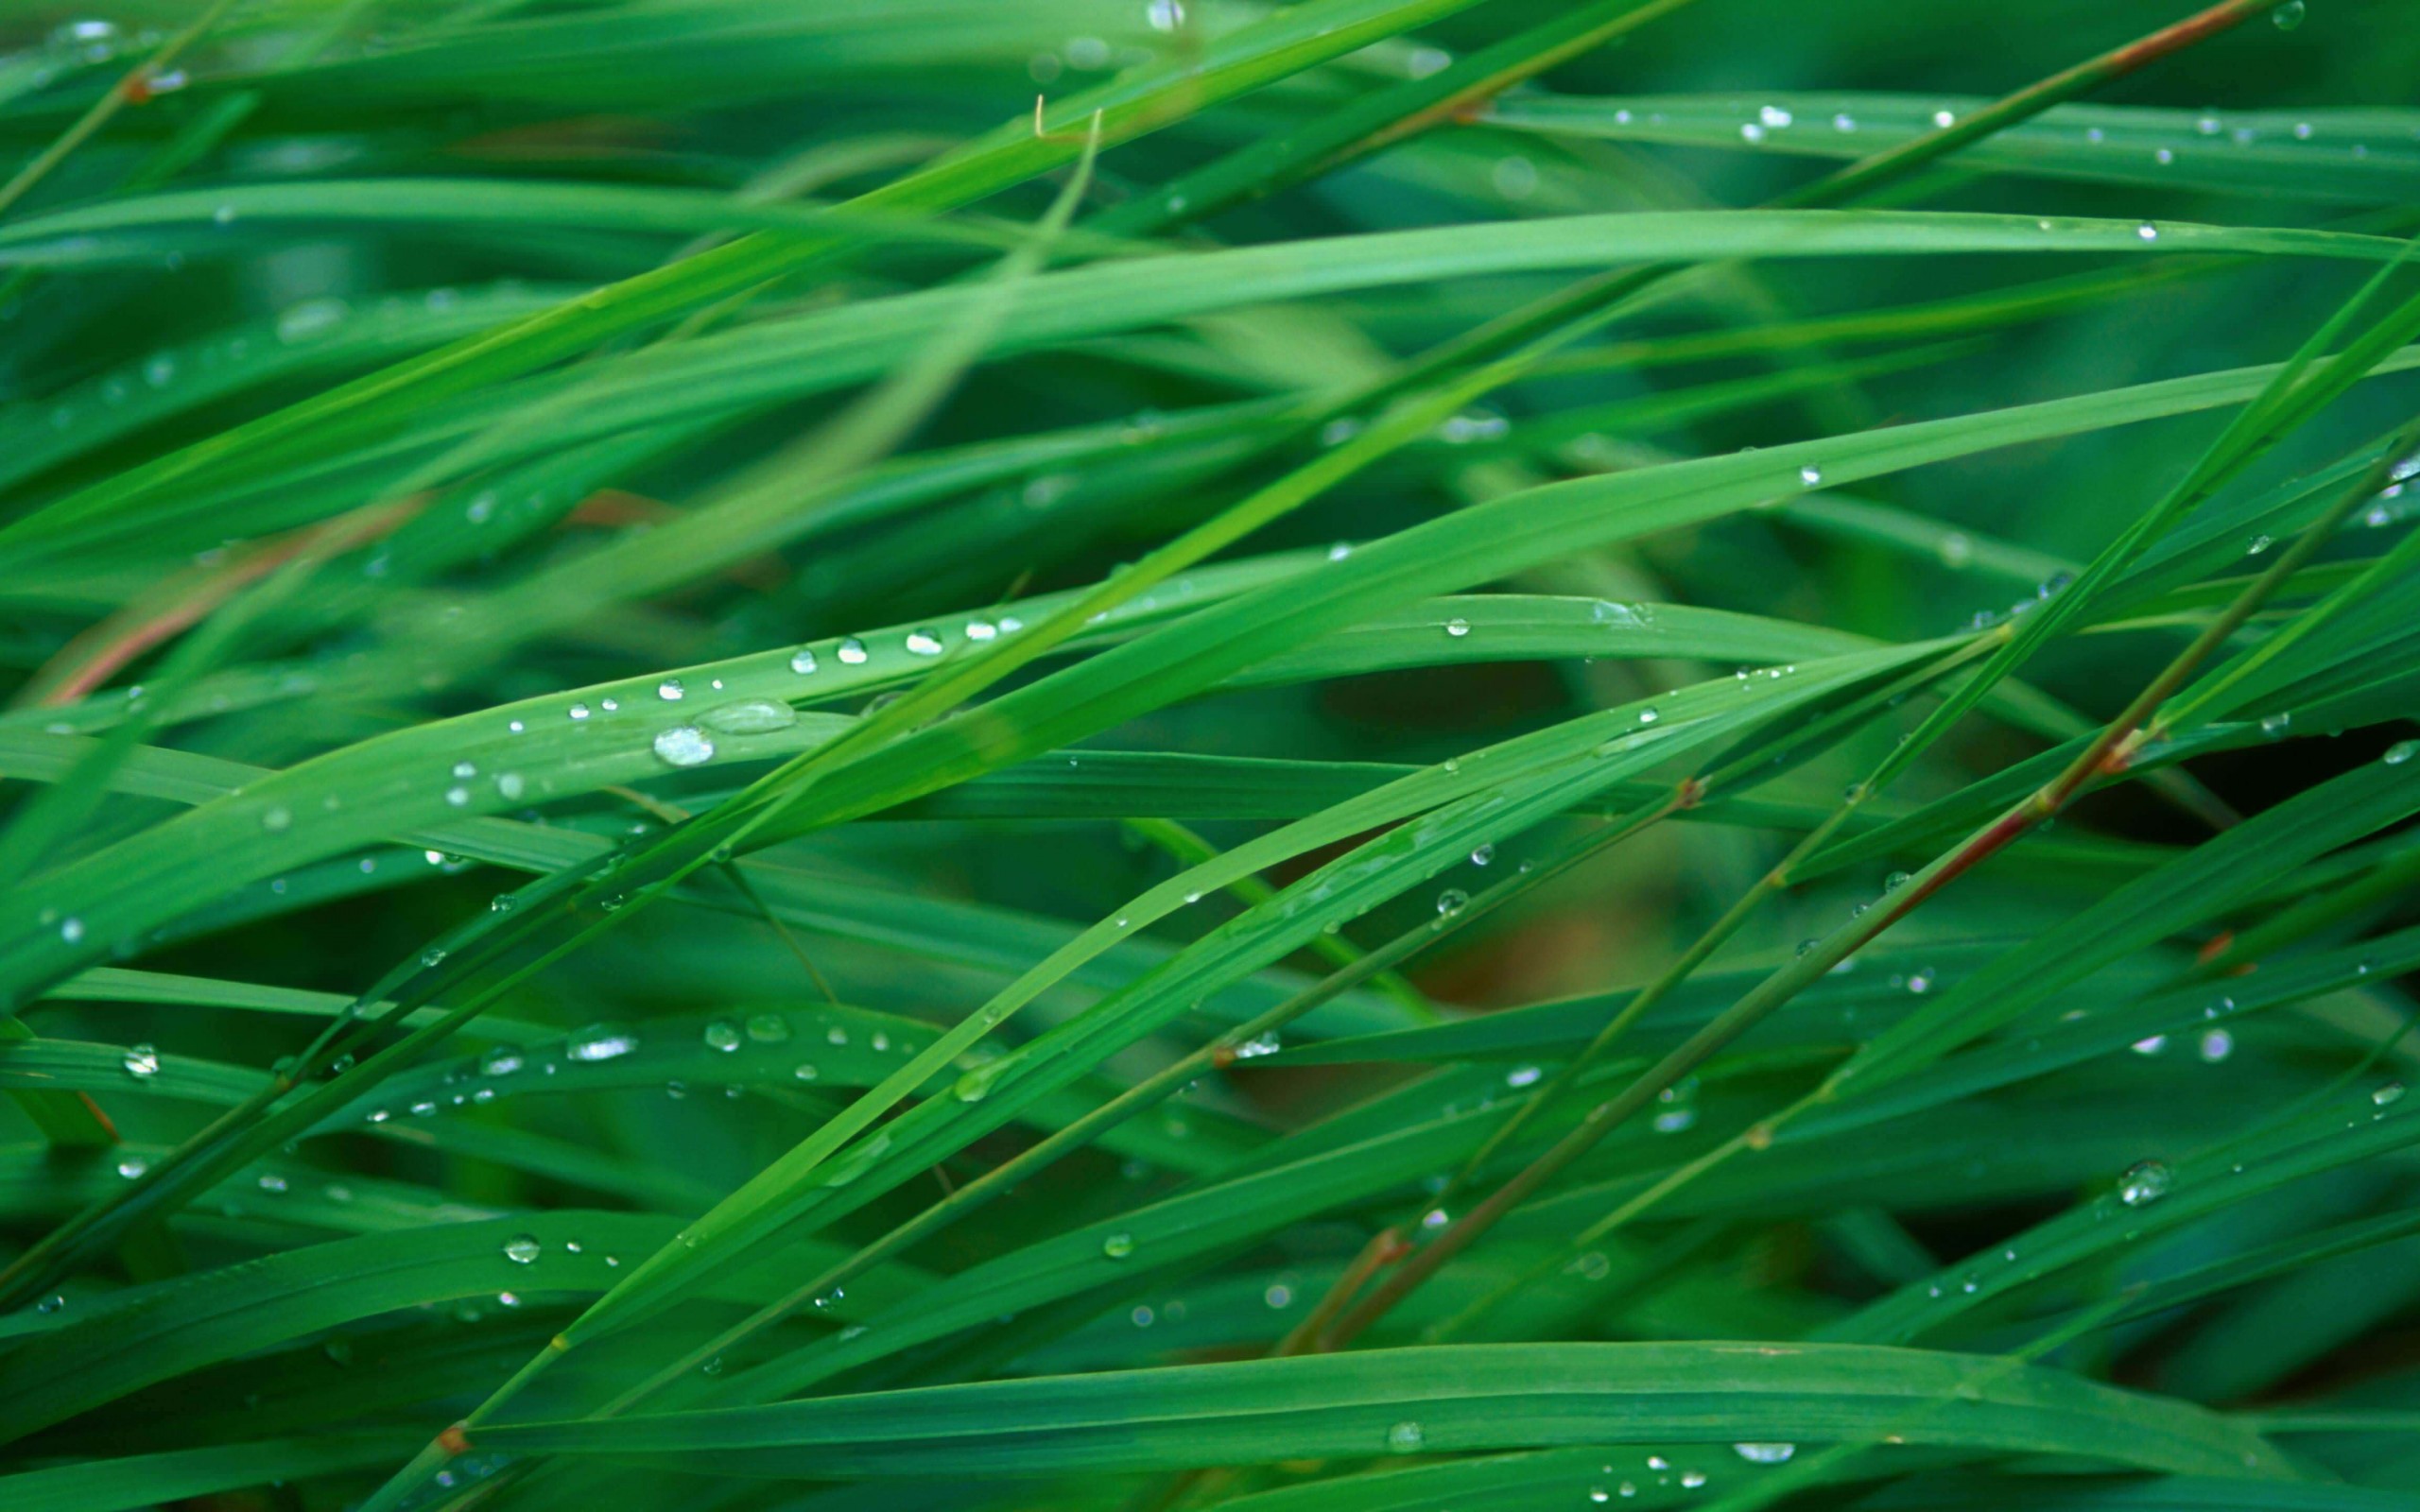 Green Blades Of Grass Wallpaper for Desktop 2560x1600